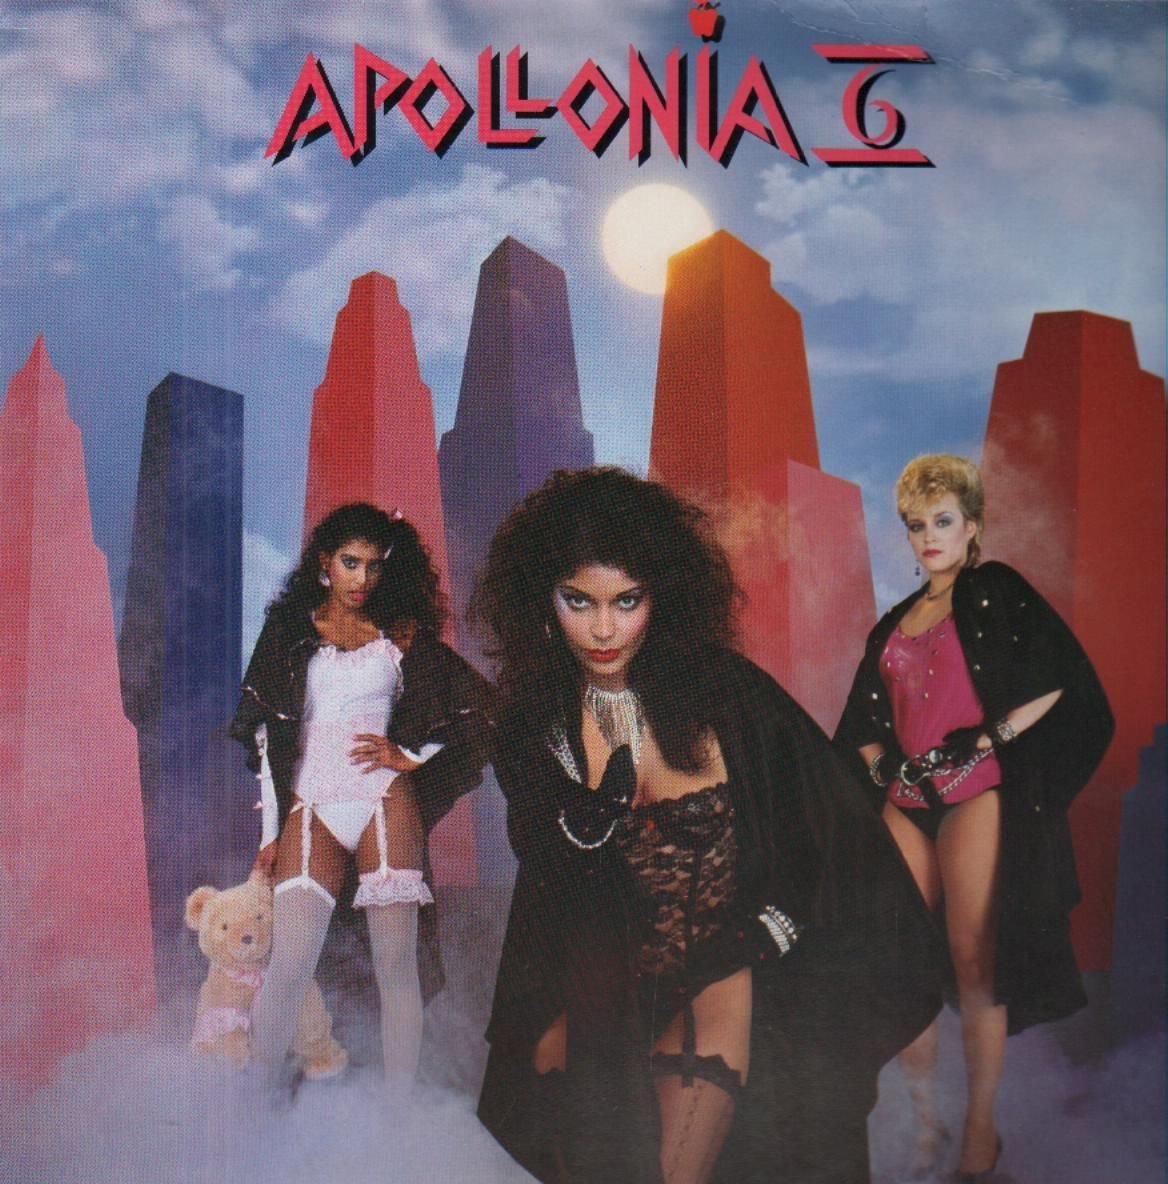 Apollonia 6 / Apollonia 6のジャケット